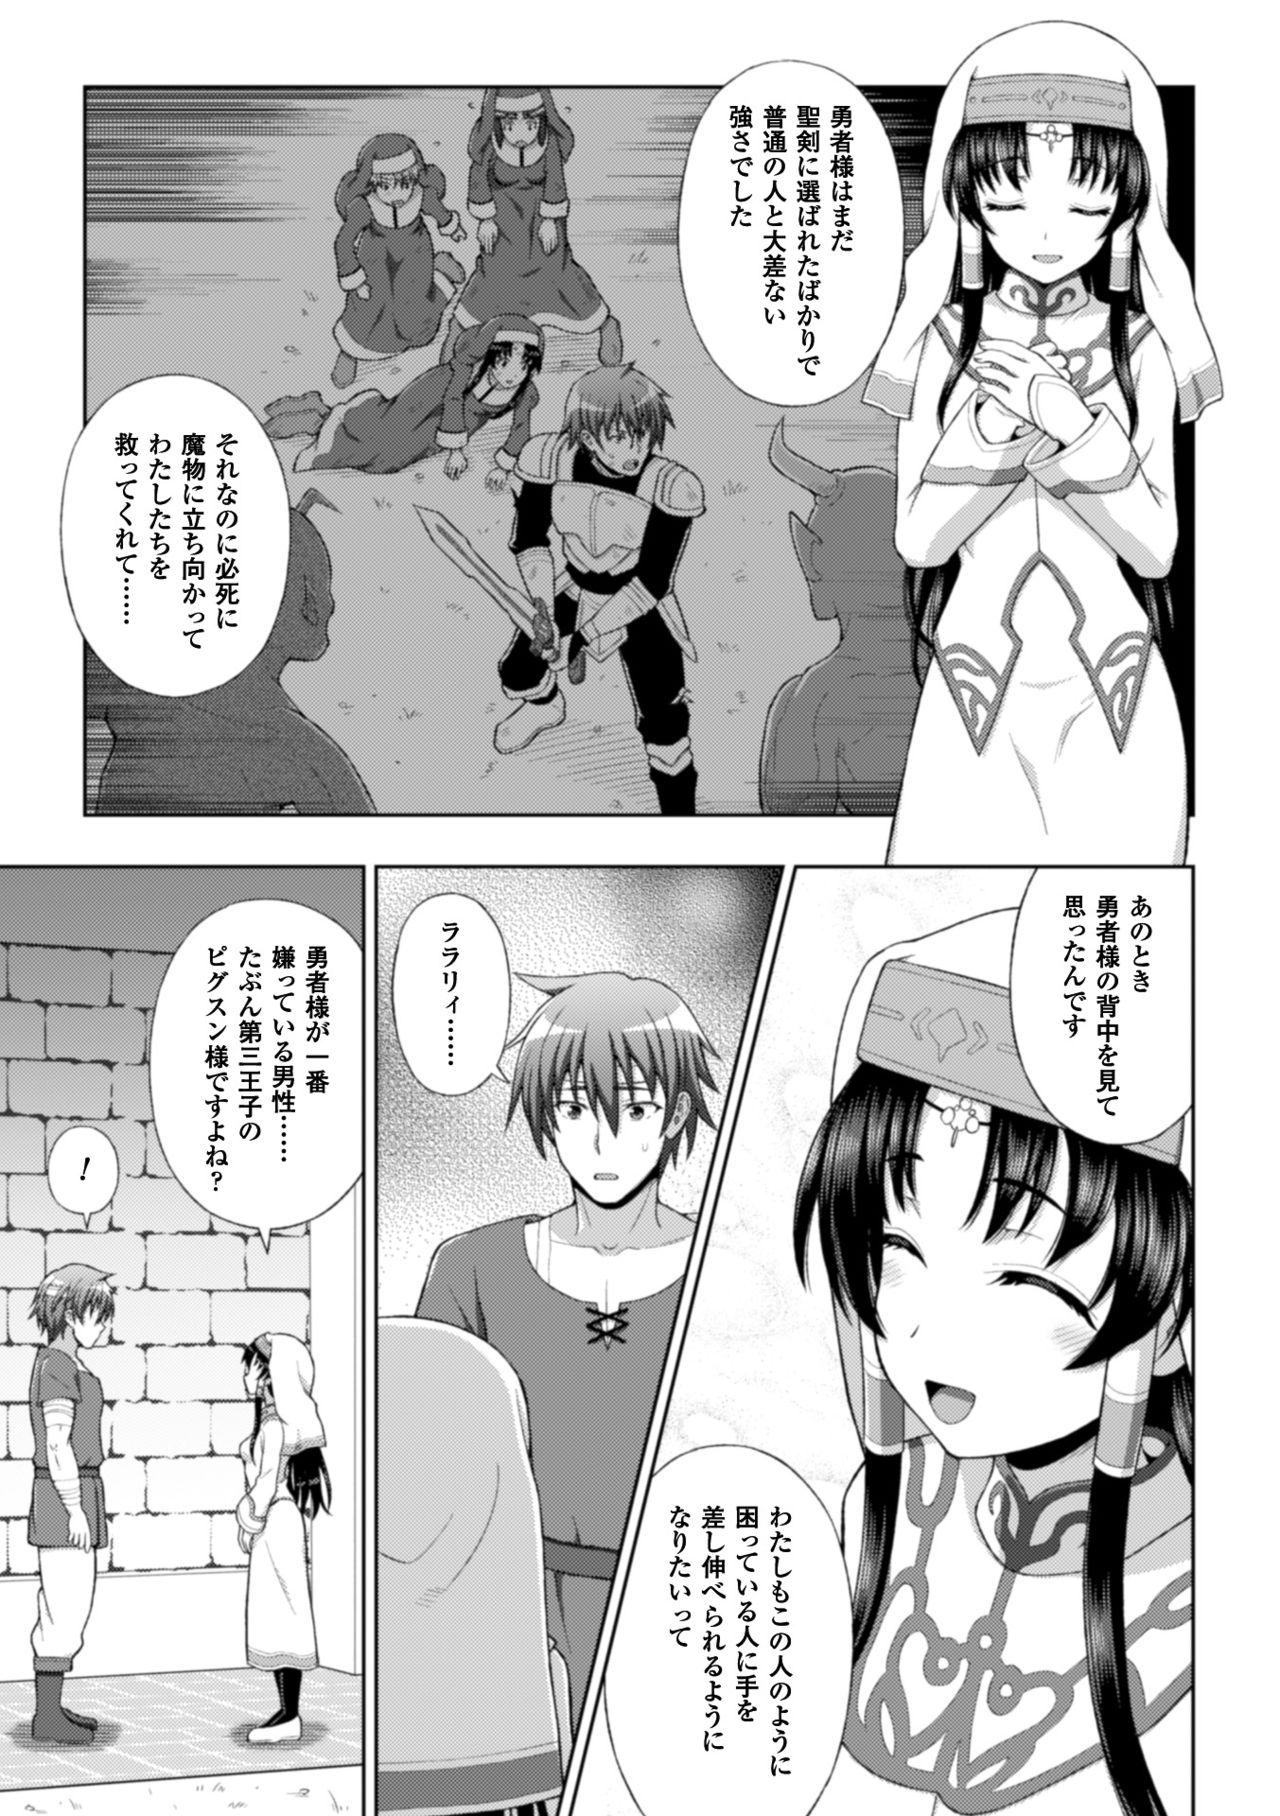 Seigi no Heroine Kangoku File Vol. 10 26